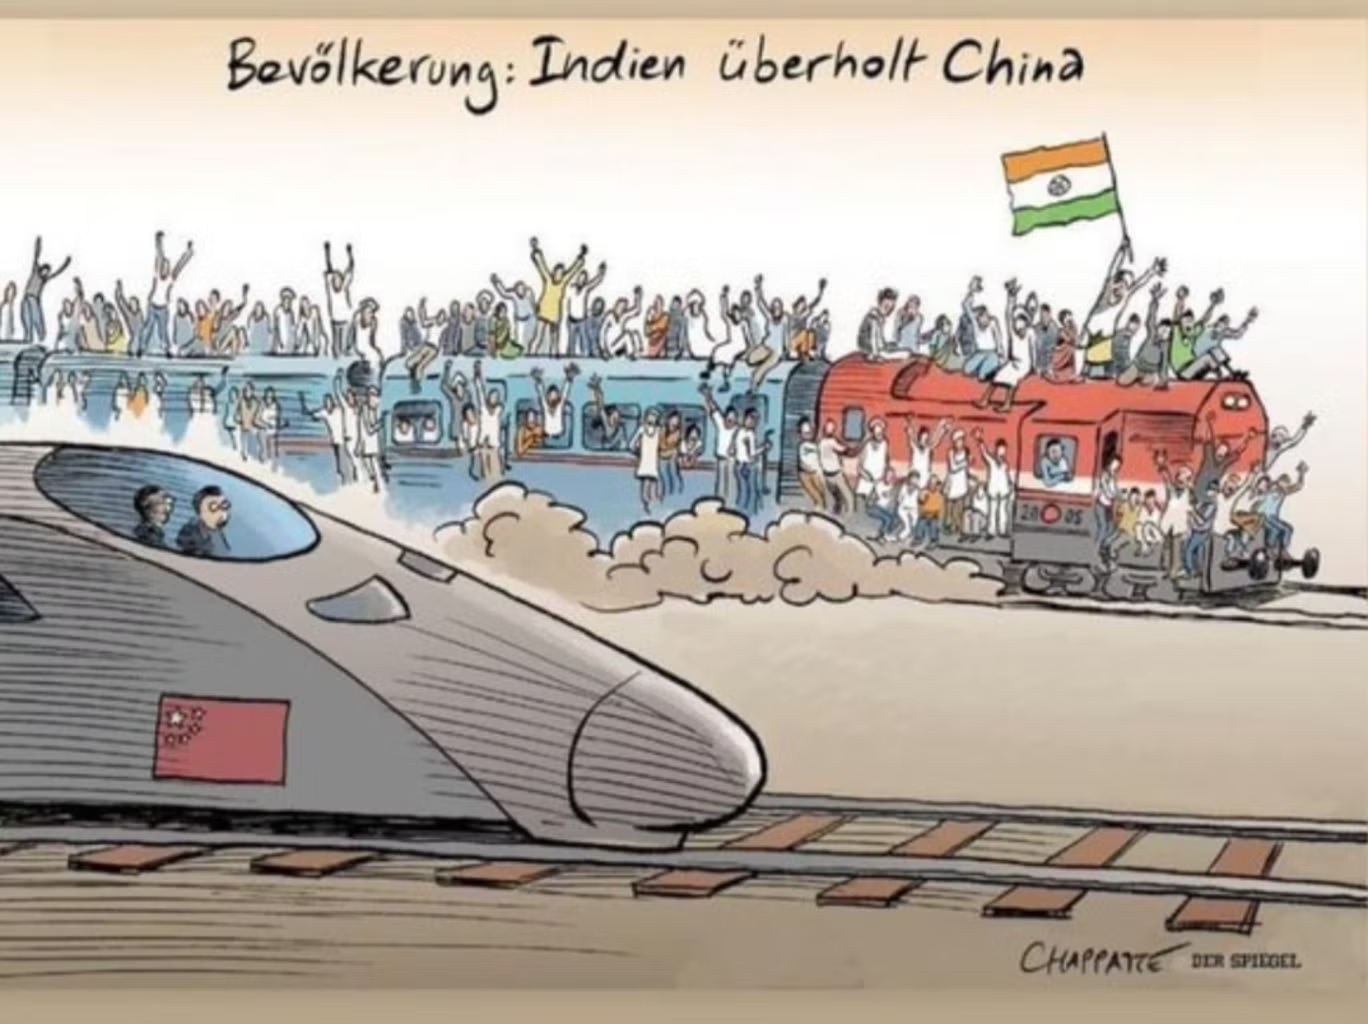 هذا الرسم الكاريكاتيري في الصحيفة الألمانية "دير شبيغل" أغضب الهنود الذين يزعمون أنه "عنصري" (تويتر)